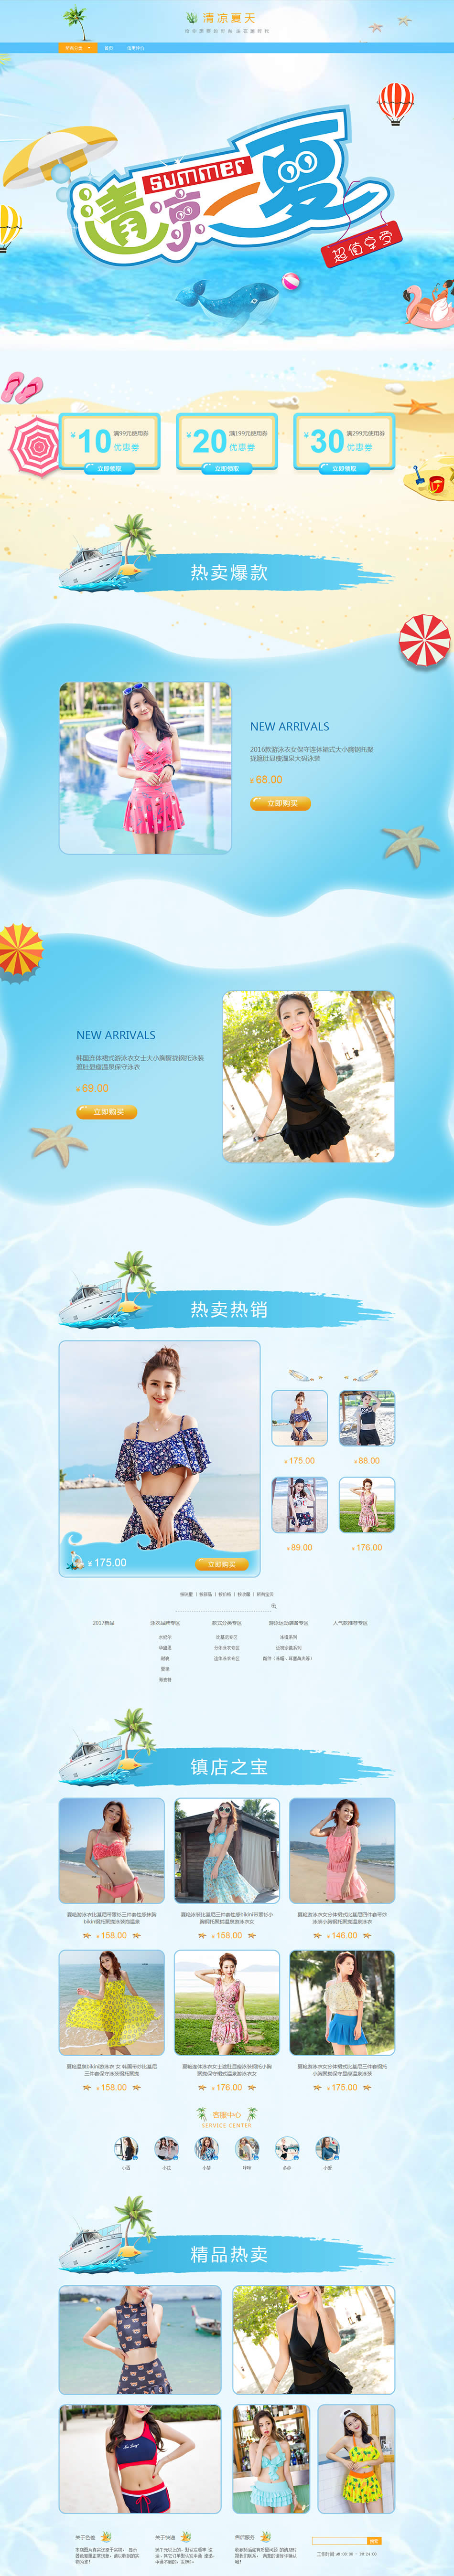 清凉一夏-泳装、女装等行业专用旺铺专业智能版模板